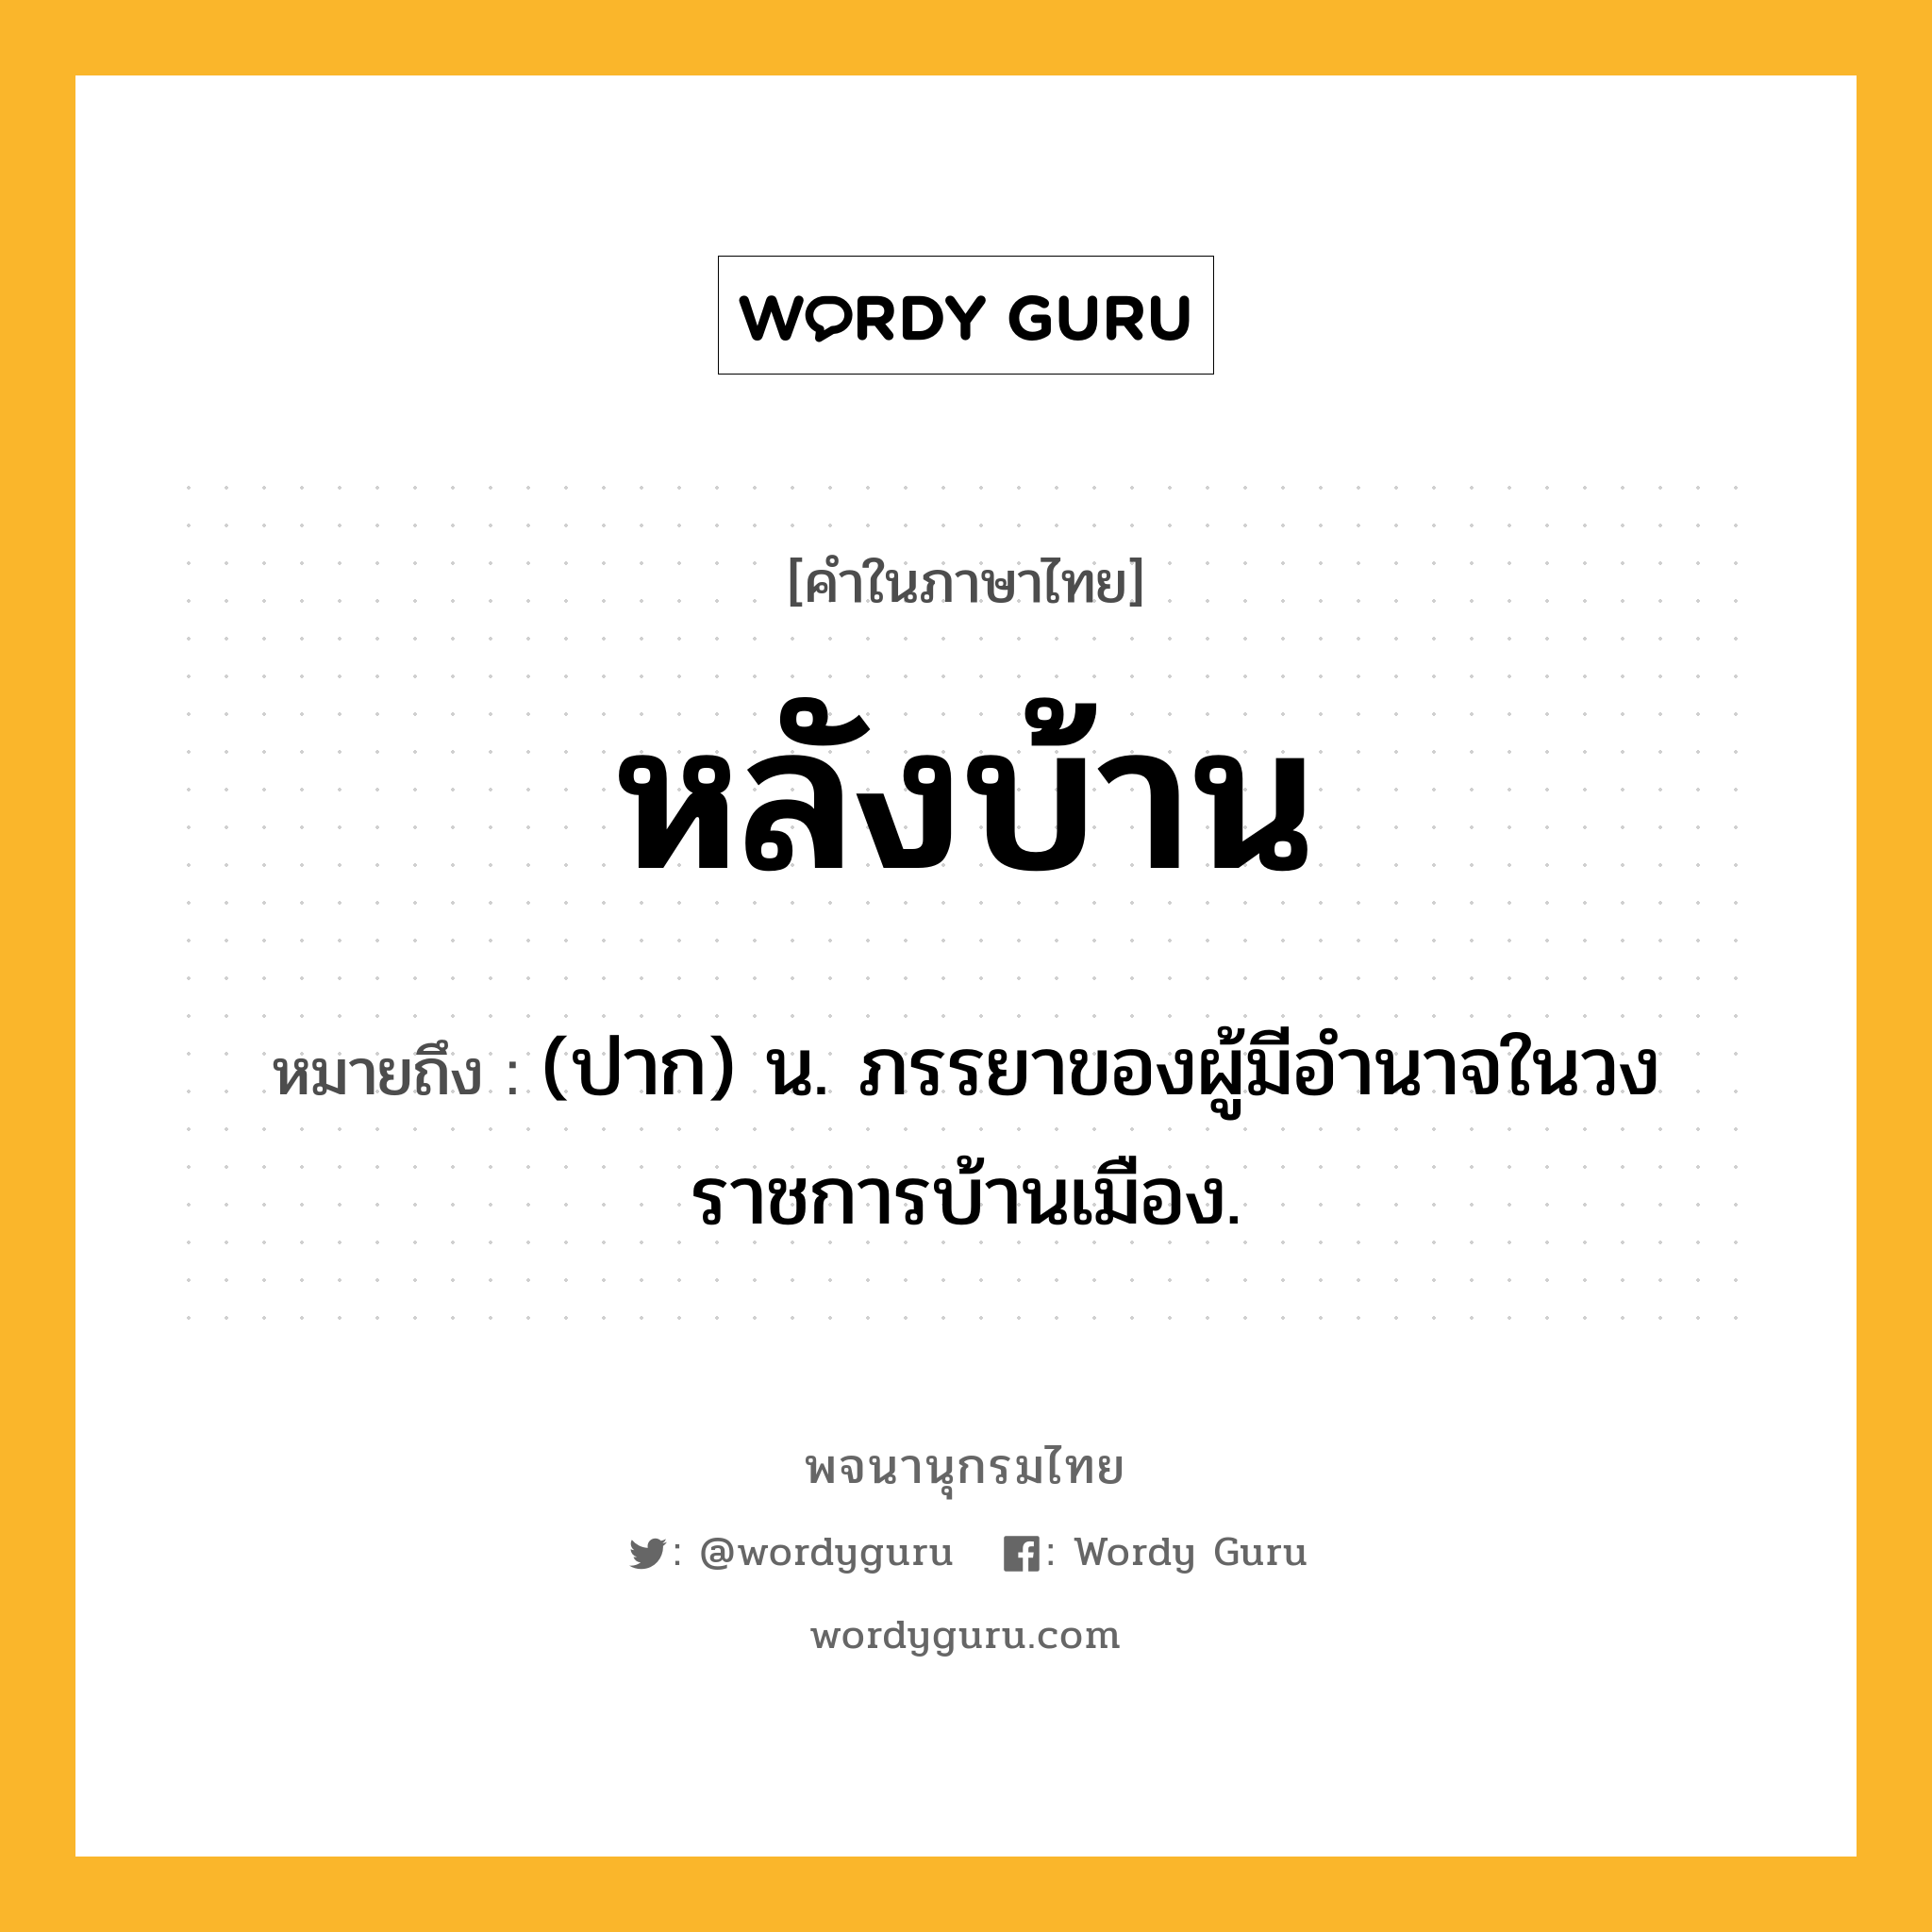 หลังบ้าน ความหมาย หมายถึงอะไร?, คำในภาษาไทย หลังบ้าน หมายถึง (ปาก) น. ภรรยาของผู้มีอำนาจในวงราชการบ้านเมือง.